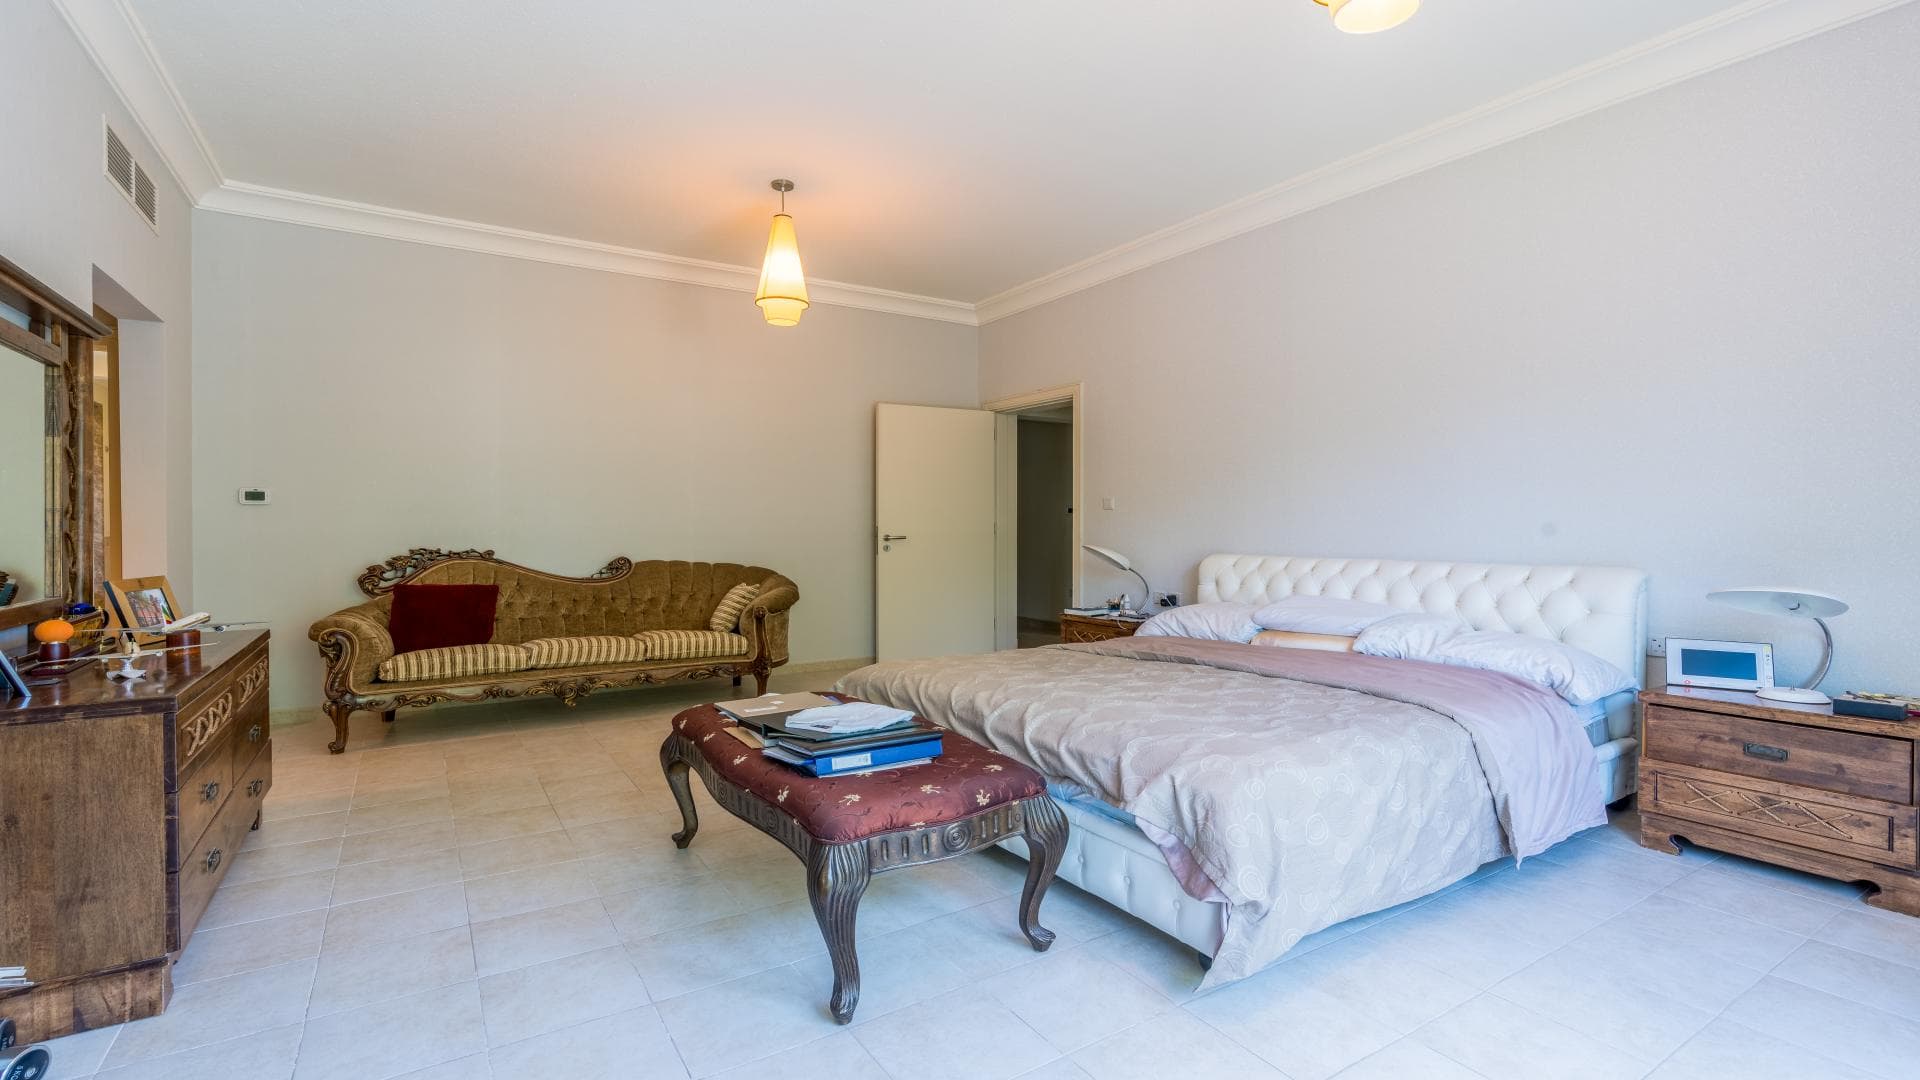 5 Bedroom Villa For Rent Al Thamam 35 Lp19427 71f44e3d2ea3d80.jpg